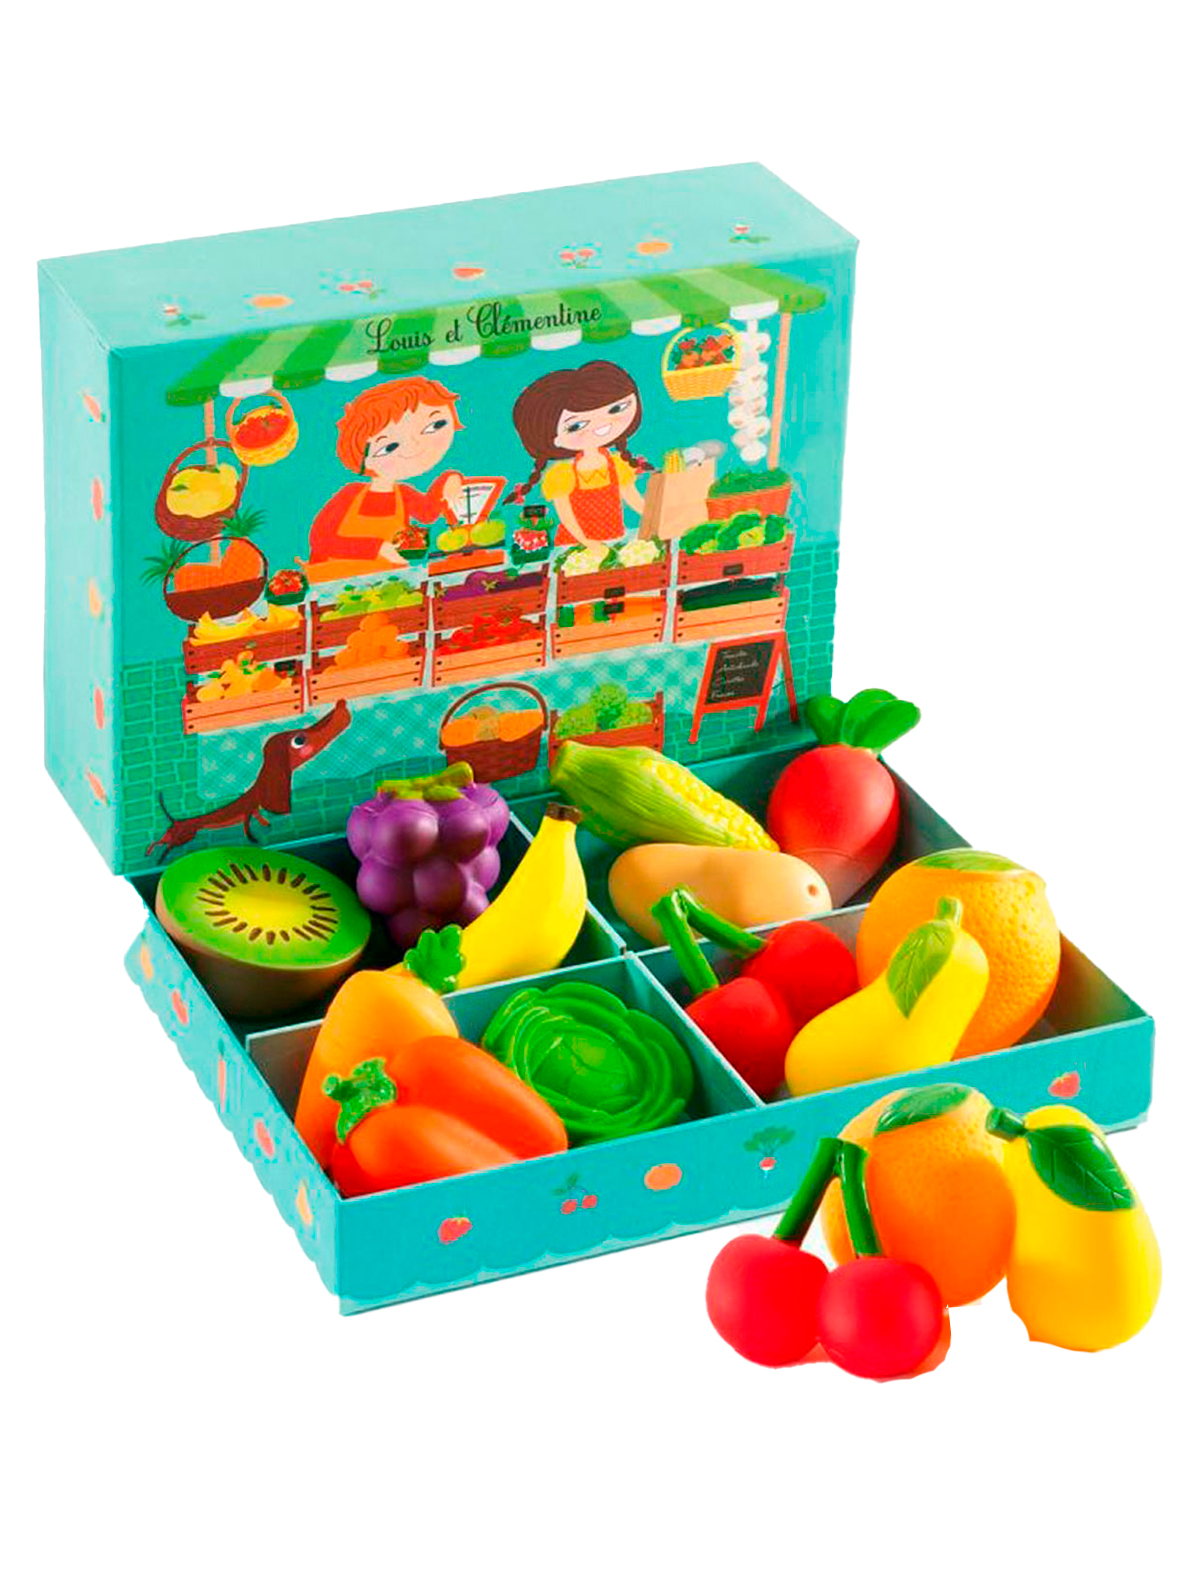 Игра магазины коробки. Набор продуктов Djeco овощная Лавка 06621. Джеко набор барбекю. Набор игр Джеко. Набор овощей и фруктов для детей.